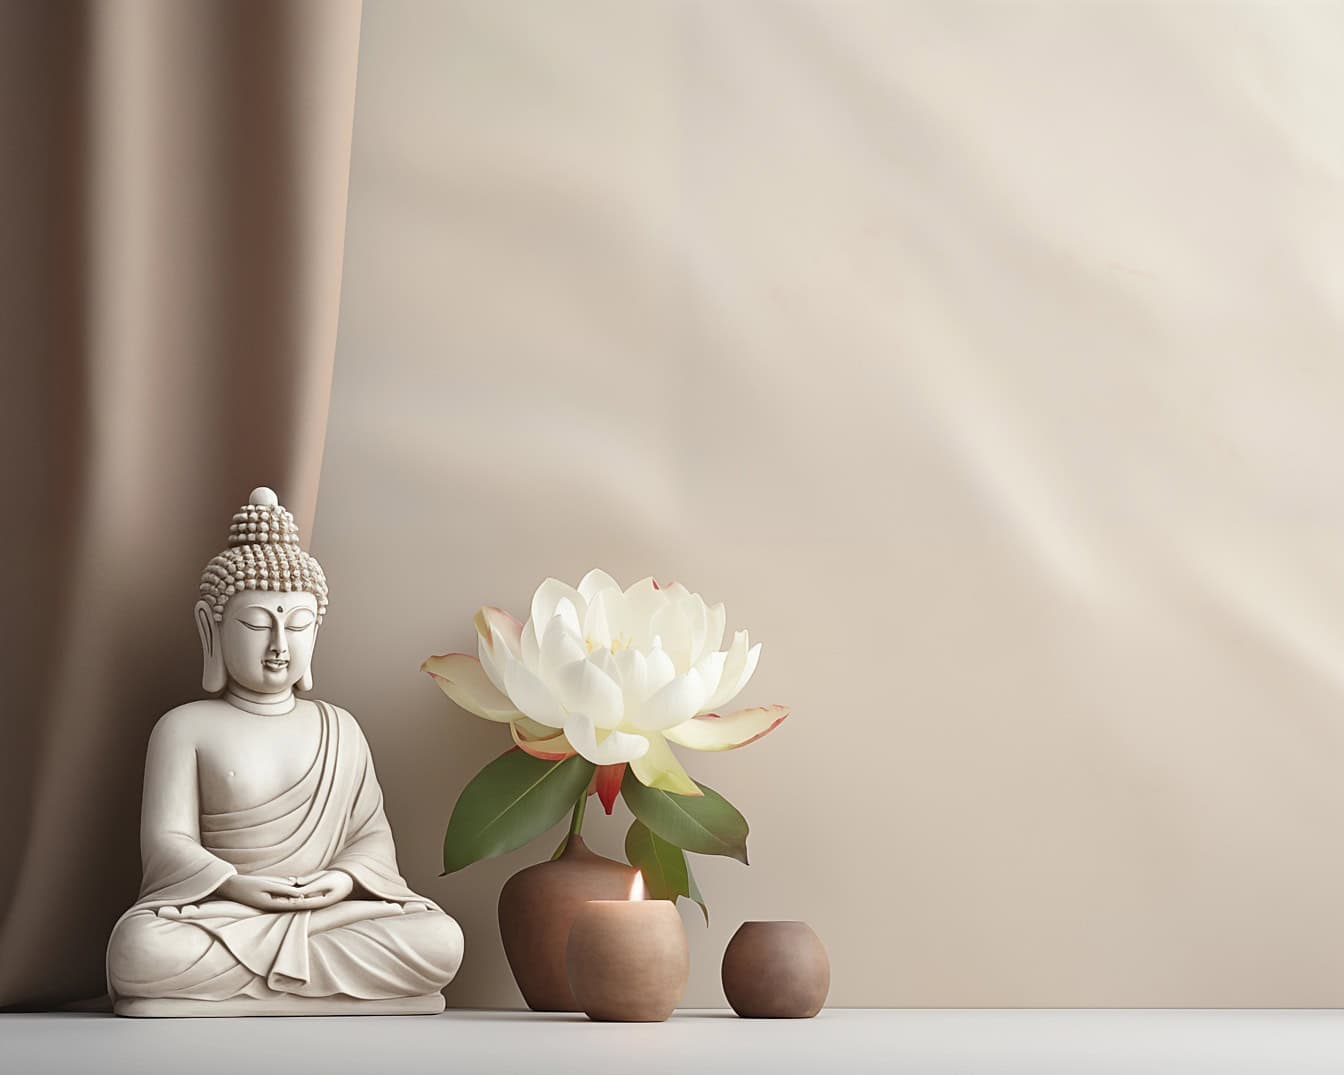 Biela socha Budhu sediaca vedľa bieleho lotosového kvetu, ilustrácia zobrazujúca zenovú meditáciu